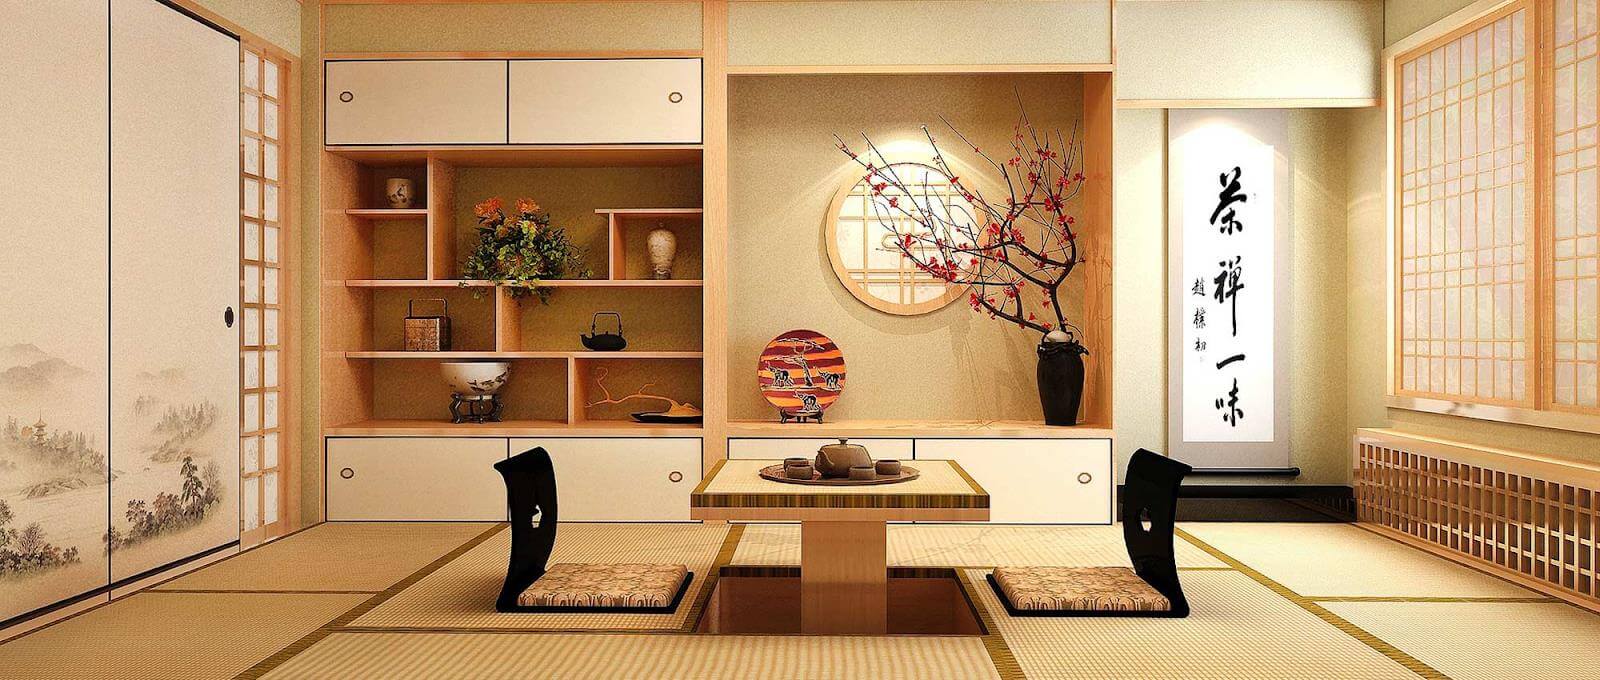 Thiết kế căn hộ kiểu Nhật 